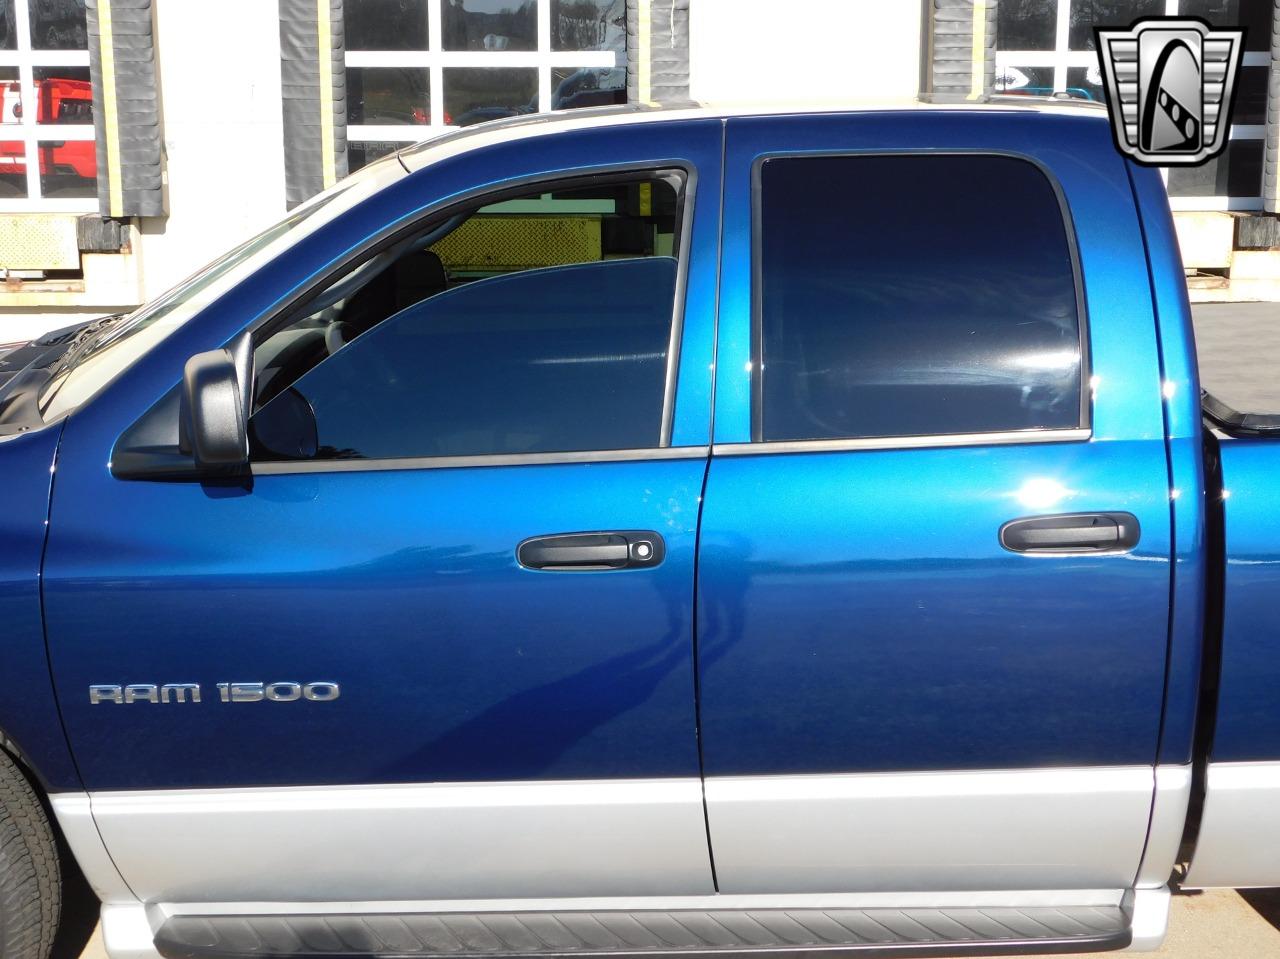 2005 Dodge 1500